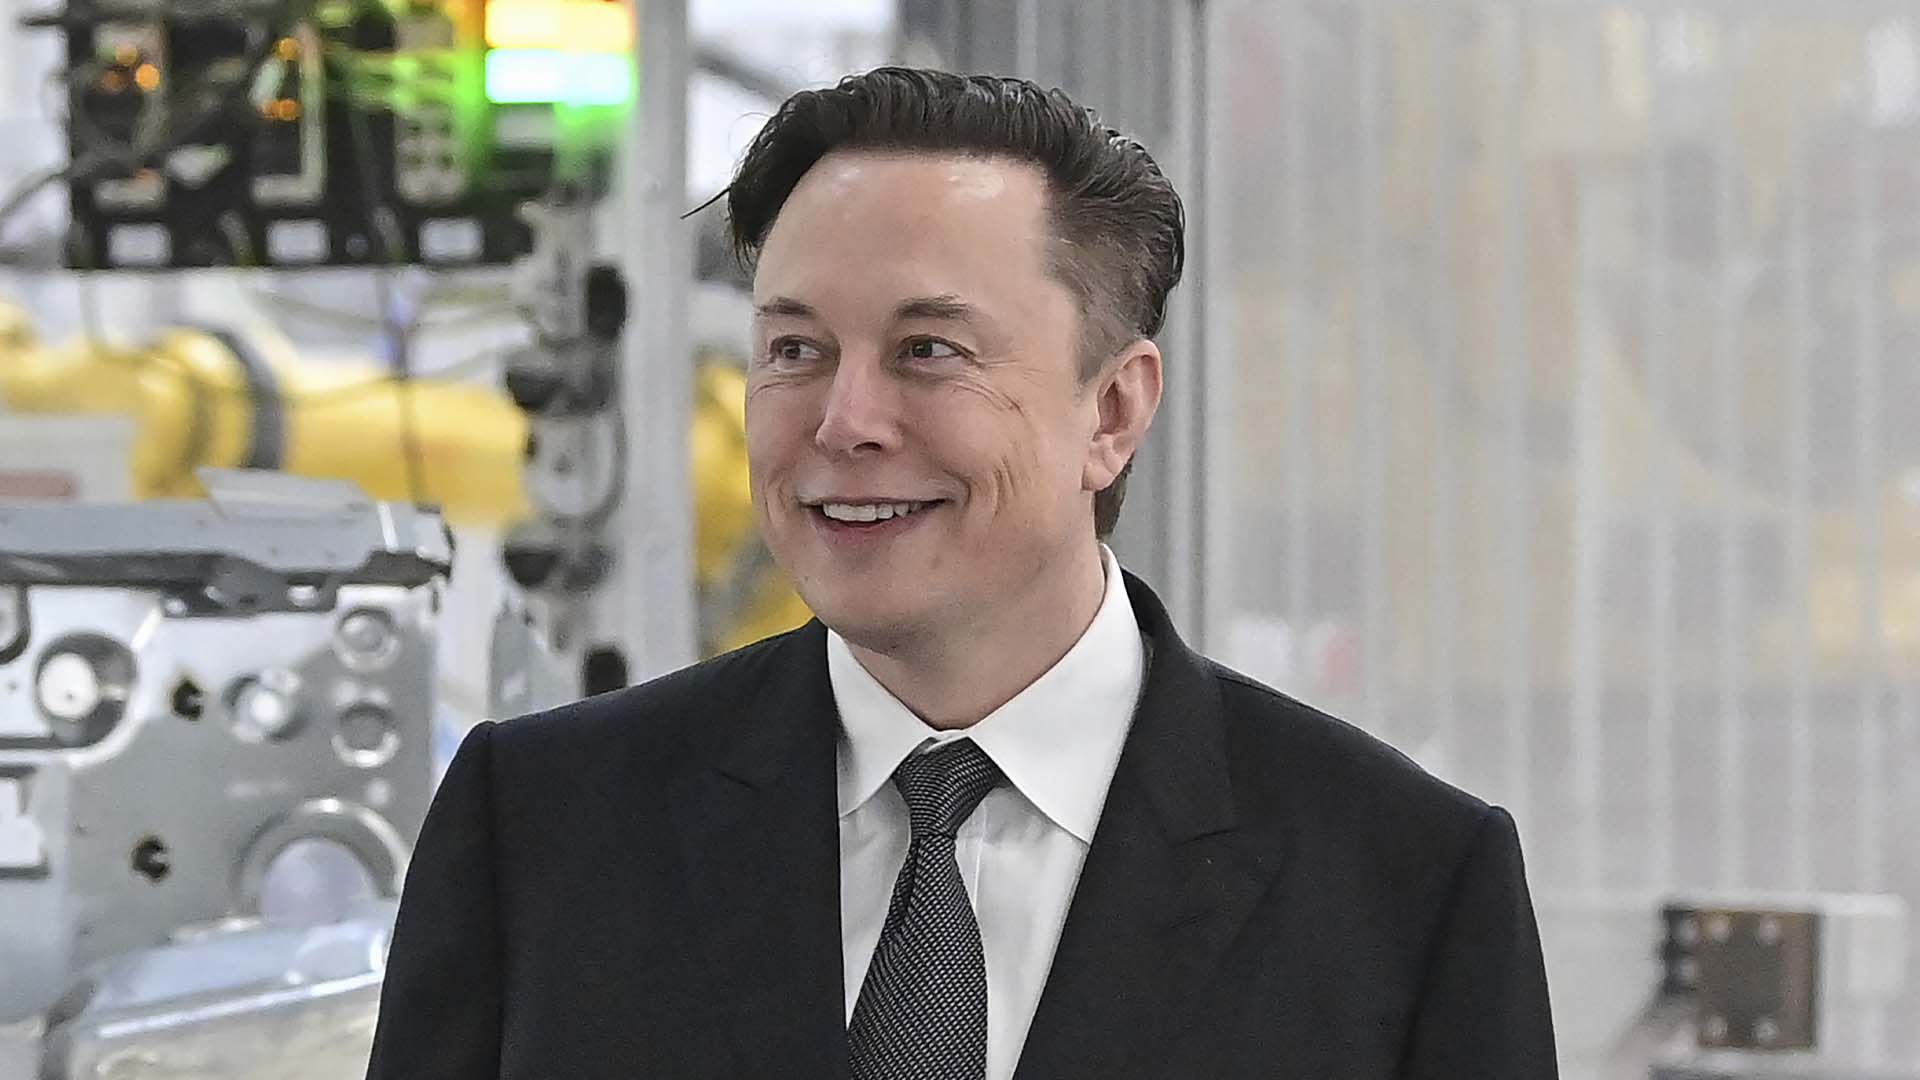 Les avocats de M. Musk ont accusé Twitter de retenir des informations à propos de faux comptes, une préoccupation de longue date pour Elon Musk.